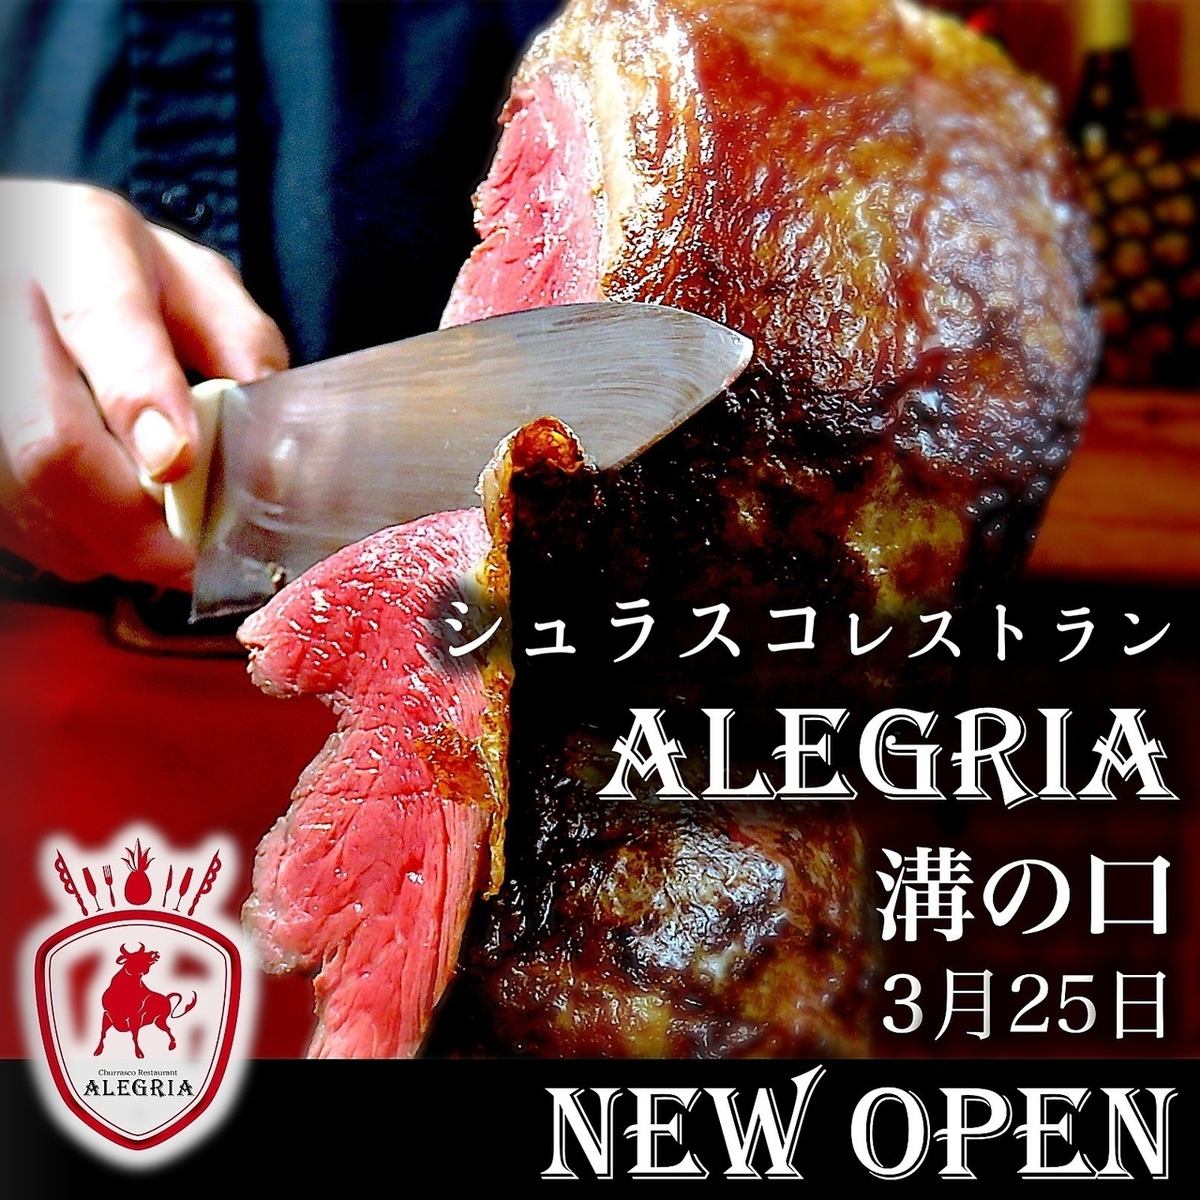 [GRAND OPEN] Churrasco & Beer Restaurant Alegria Mizonokuchi